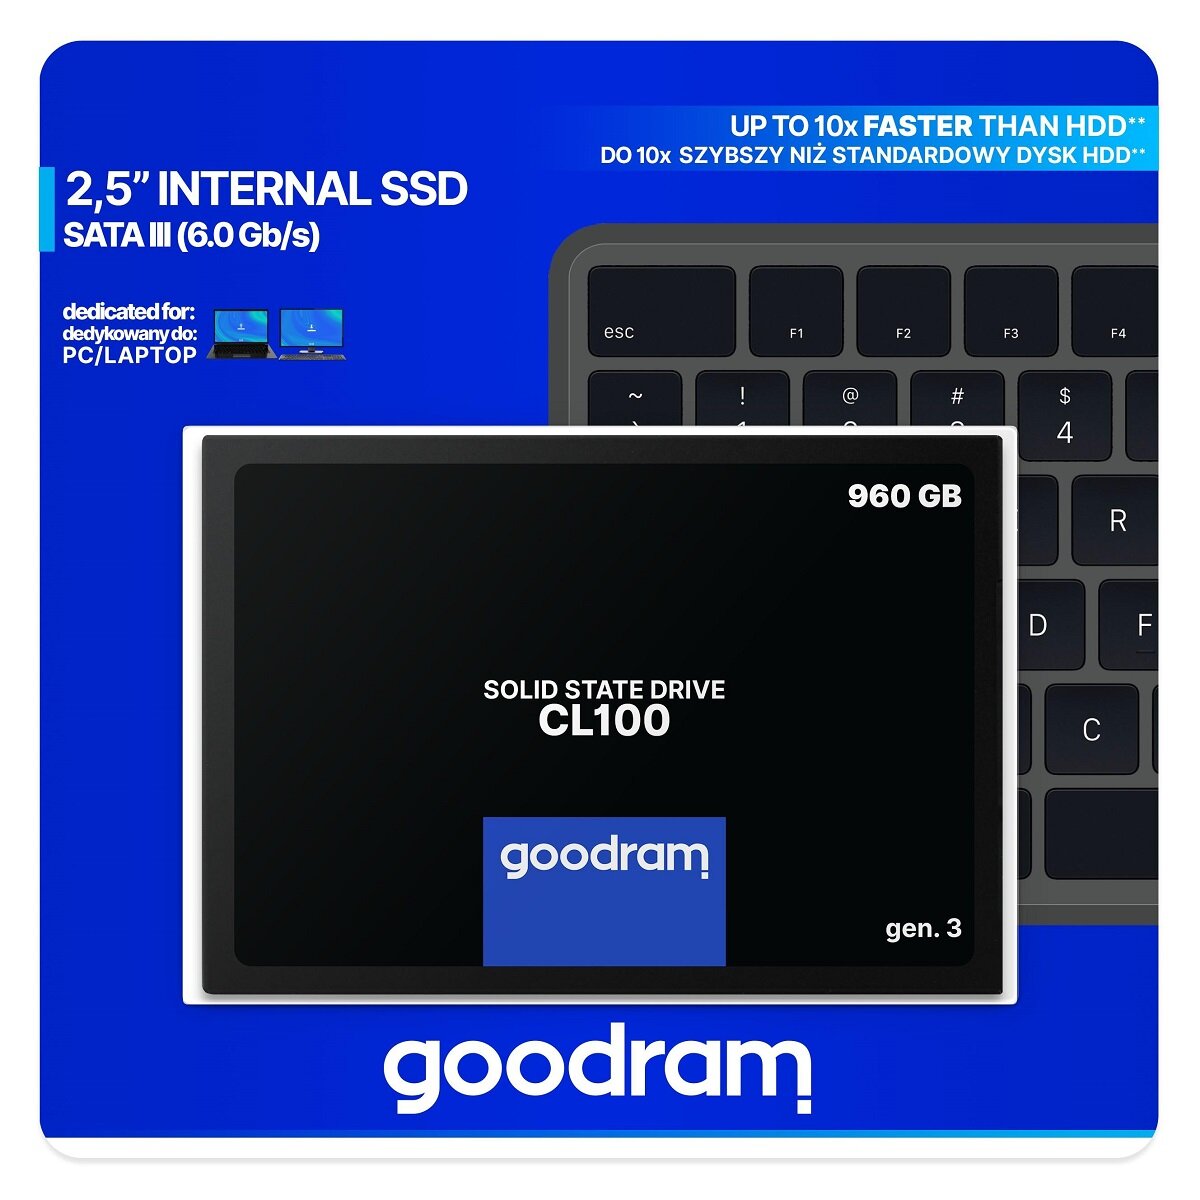 Dysk SSD Goodram CL100 gen. 3 960GB opakowanie od przodu